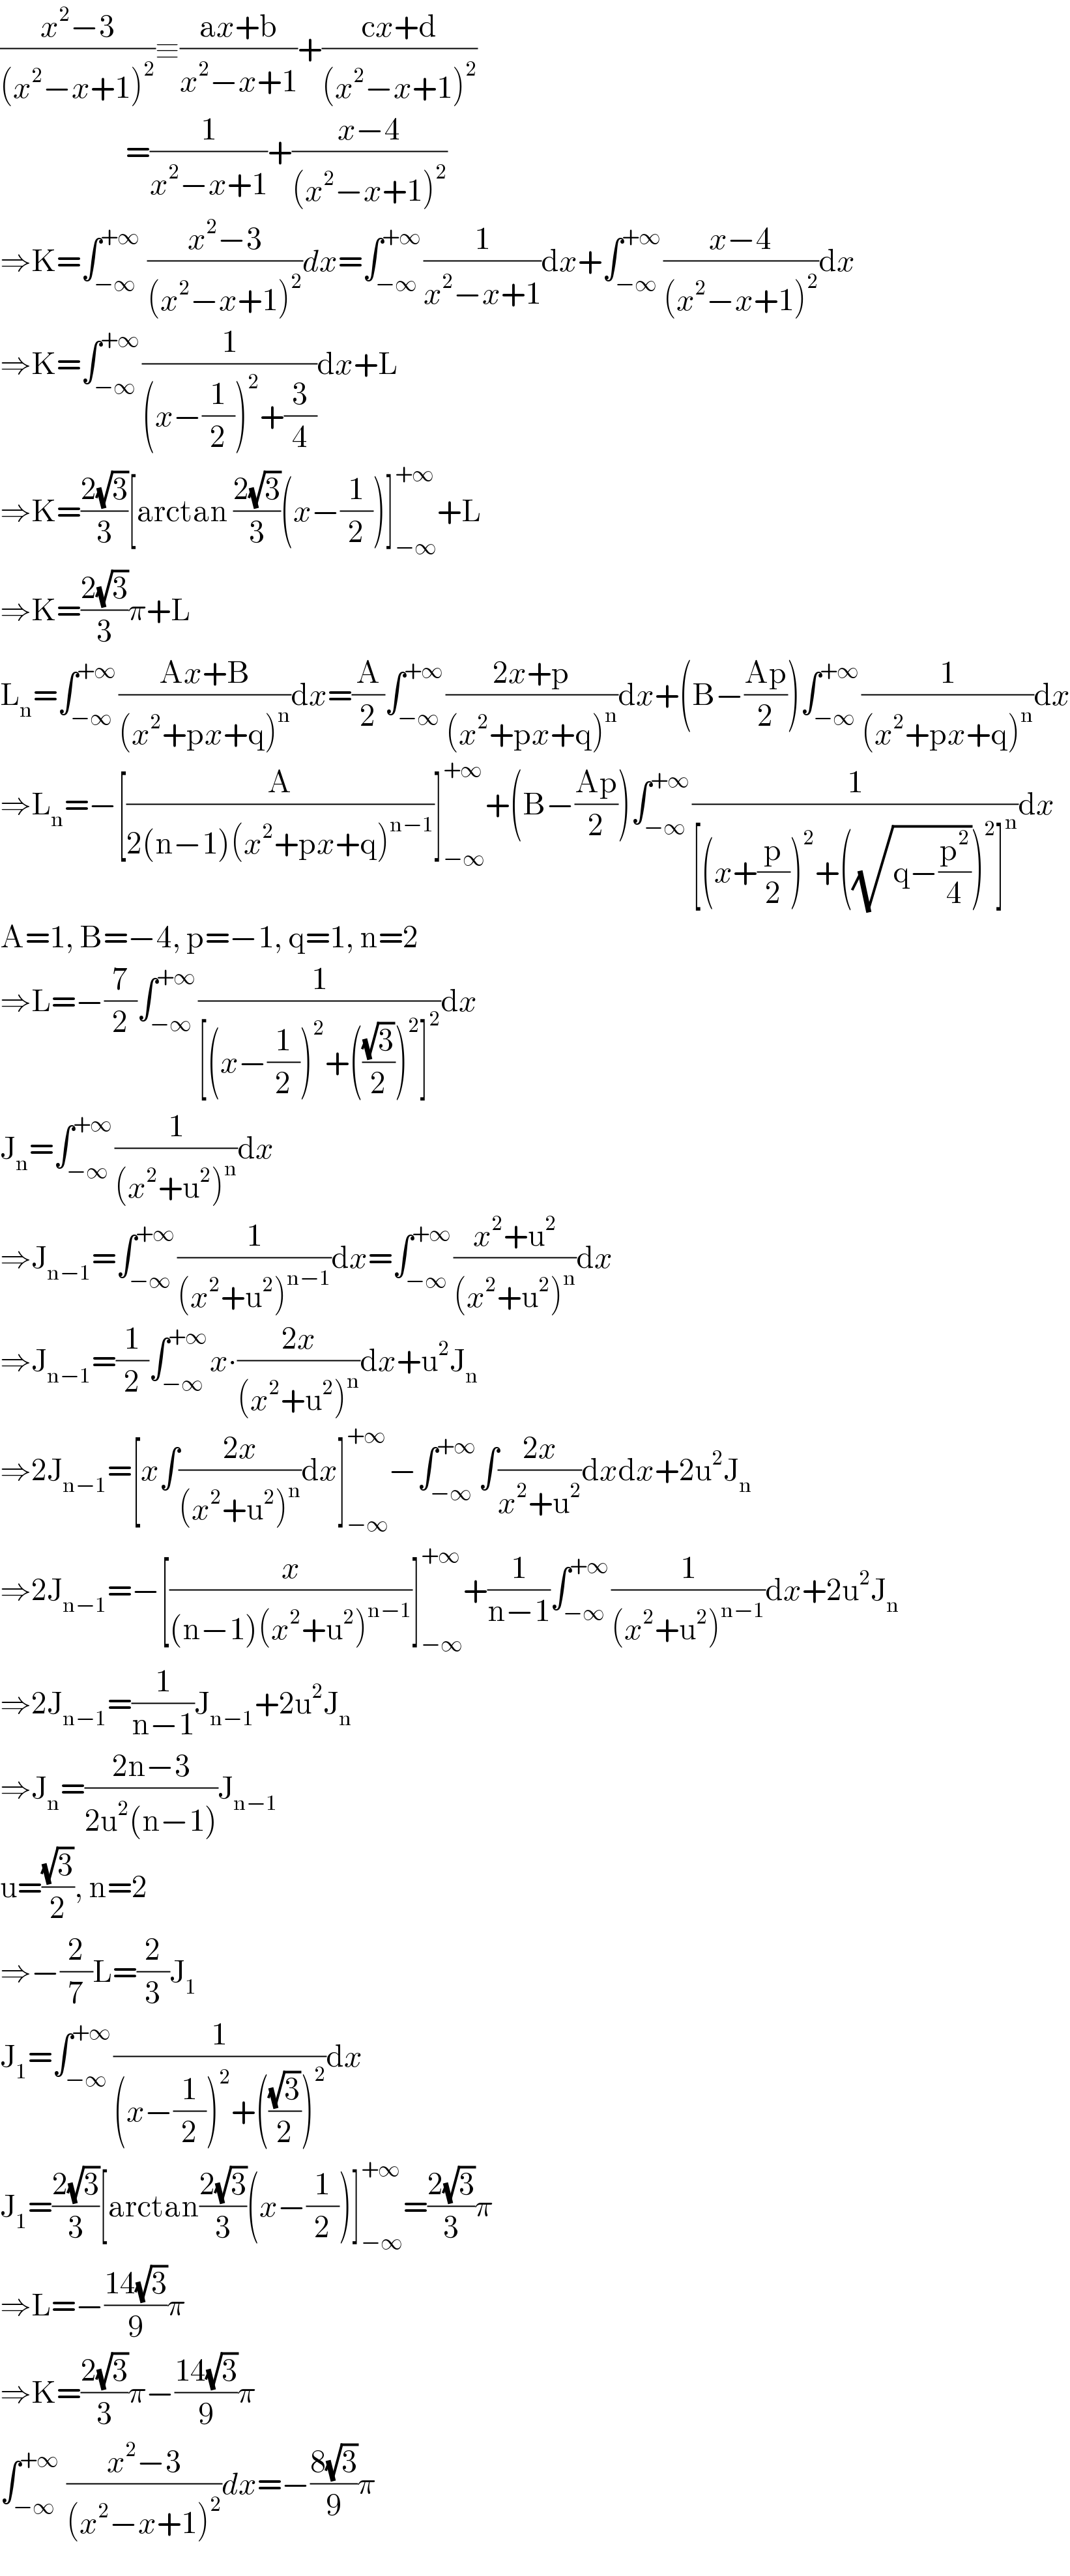 ((x^2 −3)/((x^2 −x+1)^2 ))≡((ax+b)/(x^2 −x+1))+((cx+d)/((x^2 −x+1)^2 ))                          =(1/(x^2 −x+1))+((x−4)/((x^2 −x+1)^2 ))  ⇒K=∫_(−∞) ^(+∞)  ((x^2 −3)/((x^2 −x+1)^2 ))dx=∫_(−∞) ^(+∞) (1/(x^2 −x+1))dx+∫_(−∞) ^(+∞) ((x−4)/((x^2 −x+1)^2 ))dx  ⇒K=∫_(−∞) ^(+∞) (1/((x−(1/2))^2 +(3/4)))dx+L  ⇒K=((2(√3))/3)[arctan ((2(√3))/3)(x−(1/2))]_(−∞) ^(+∞) +L  ⇒K=((2(√3))/3)π+L  L_n =∫_(−∞) ^(+∞) ((Ax+B)/((x^2 +px+q)^n ))dx=(A/2)∫_(−∞) ^(+∞) ((2x+p)/((x^2 +px+q)^n ))dx+(B−((Ap)/2))∫_(−∞) ^(+∞) (1/((x^2 +px+q)^n ))dx  ⇒L_n =−[(A/(2(n−1)(x^2 +px+q)^(n−1) ))]_(−∞) ^(+∞) +(B−((Ap)/2))∫_(−∞) ^(+∞) (1/([(x+(p/2))^2 +((√(q−(p^2 /4))))^2 ]^n ))dx  A=1, B=−4, p=−1, q=1, n=2  ⇒L=−(7/2)∫_(−∞) ^(+∞) (1/([(x−(1/2))^2 +(((√3)/2))^2 ]^2 ))dx  J_n =∫_(−∞) ^(+∞) (1/((x^2 +u^2 )^n ))dx  ⇒J_(n−1) =∫_(−∞) ^(+∞) (1/((x^2 +u^2 )^(n−1) ))dx=∫_(−∞) ^(+∞) ((x^2 +u^2 )/((x^2 +u^2 )^n ))dx  ⇒J_(n−1) =(1/2)∫_(−∞) ^(+∞) x∙((2x)/((x^2 +u^2 )^n ))dx+u^2 J_n   ⇒2J_(n−1) =[x∫((2x)/((x^2 +u^2 )^n ))dx]_(−∞) ^(+∞) −∫_(−∞) ^(+∞) ∫((2x)/(x^2 +u^2 ))dxdx+2u^2 J_n   ⇒2J_(n−1) =−[(x/((n−1)(x^2 +u^2 )^(n−1) ))]_(−∞) ^(+∞) +(1/(n−1))∫_(−∞) ^(+∞) (1/((x^2 +u^2 )^(n−1) ))dx+2u^2 J_n   ⇒2J_(n−1) =(1/(n−1))J_(n−1) +2u^2 J_n   ⇒J_n =((2n−3)/(2u^2 (n−1)))J_(n−1)   u=((√3)/2), n=2  ⇒−(2/7)L=(2/3)J_1   J_1 =∫_(−∞) ^(+∞) (1/((x−(1/2))^2 +(((√3)/2))^2 ))dx  J_1 =((2(√3))/3)[arctan((2(√3))/3)(x−(1/2))]_(−∞) ^(+∞) =((2(√3))/3)π  ⇒L=−((14(√3))/9)π  ⇒K=((2(√3))/3)π−((14(√3))/9)π  ∫_(−∞) ^(+∞)  ((x^2 −3)/((x^2 −x+1)^2 ))dx=−((8(√3))/9)π  